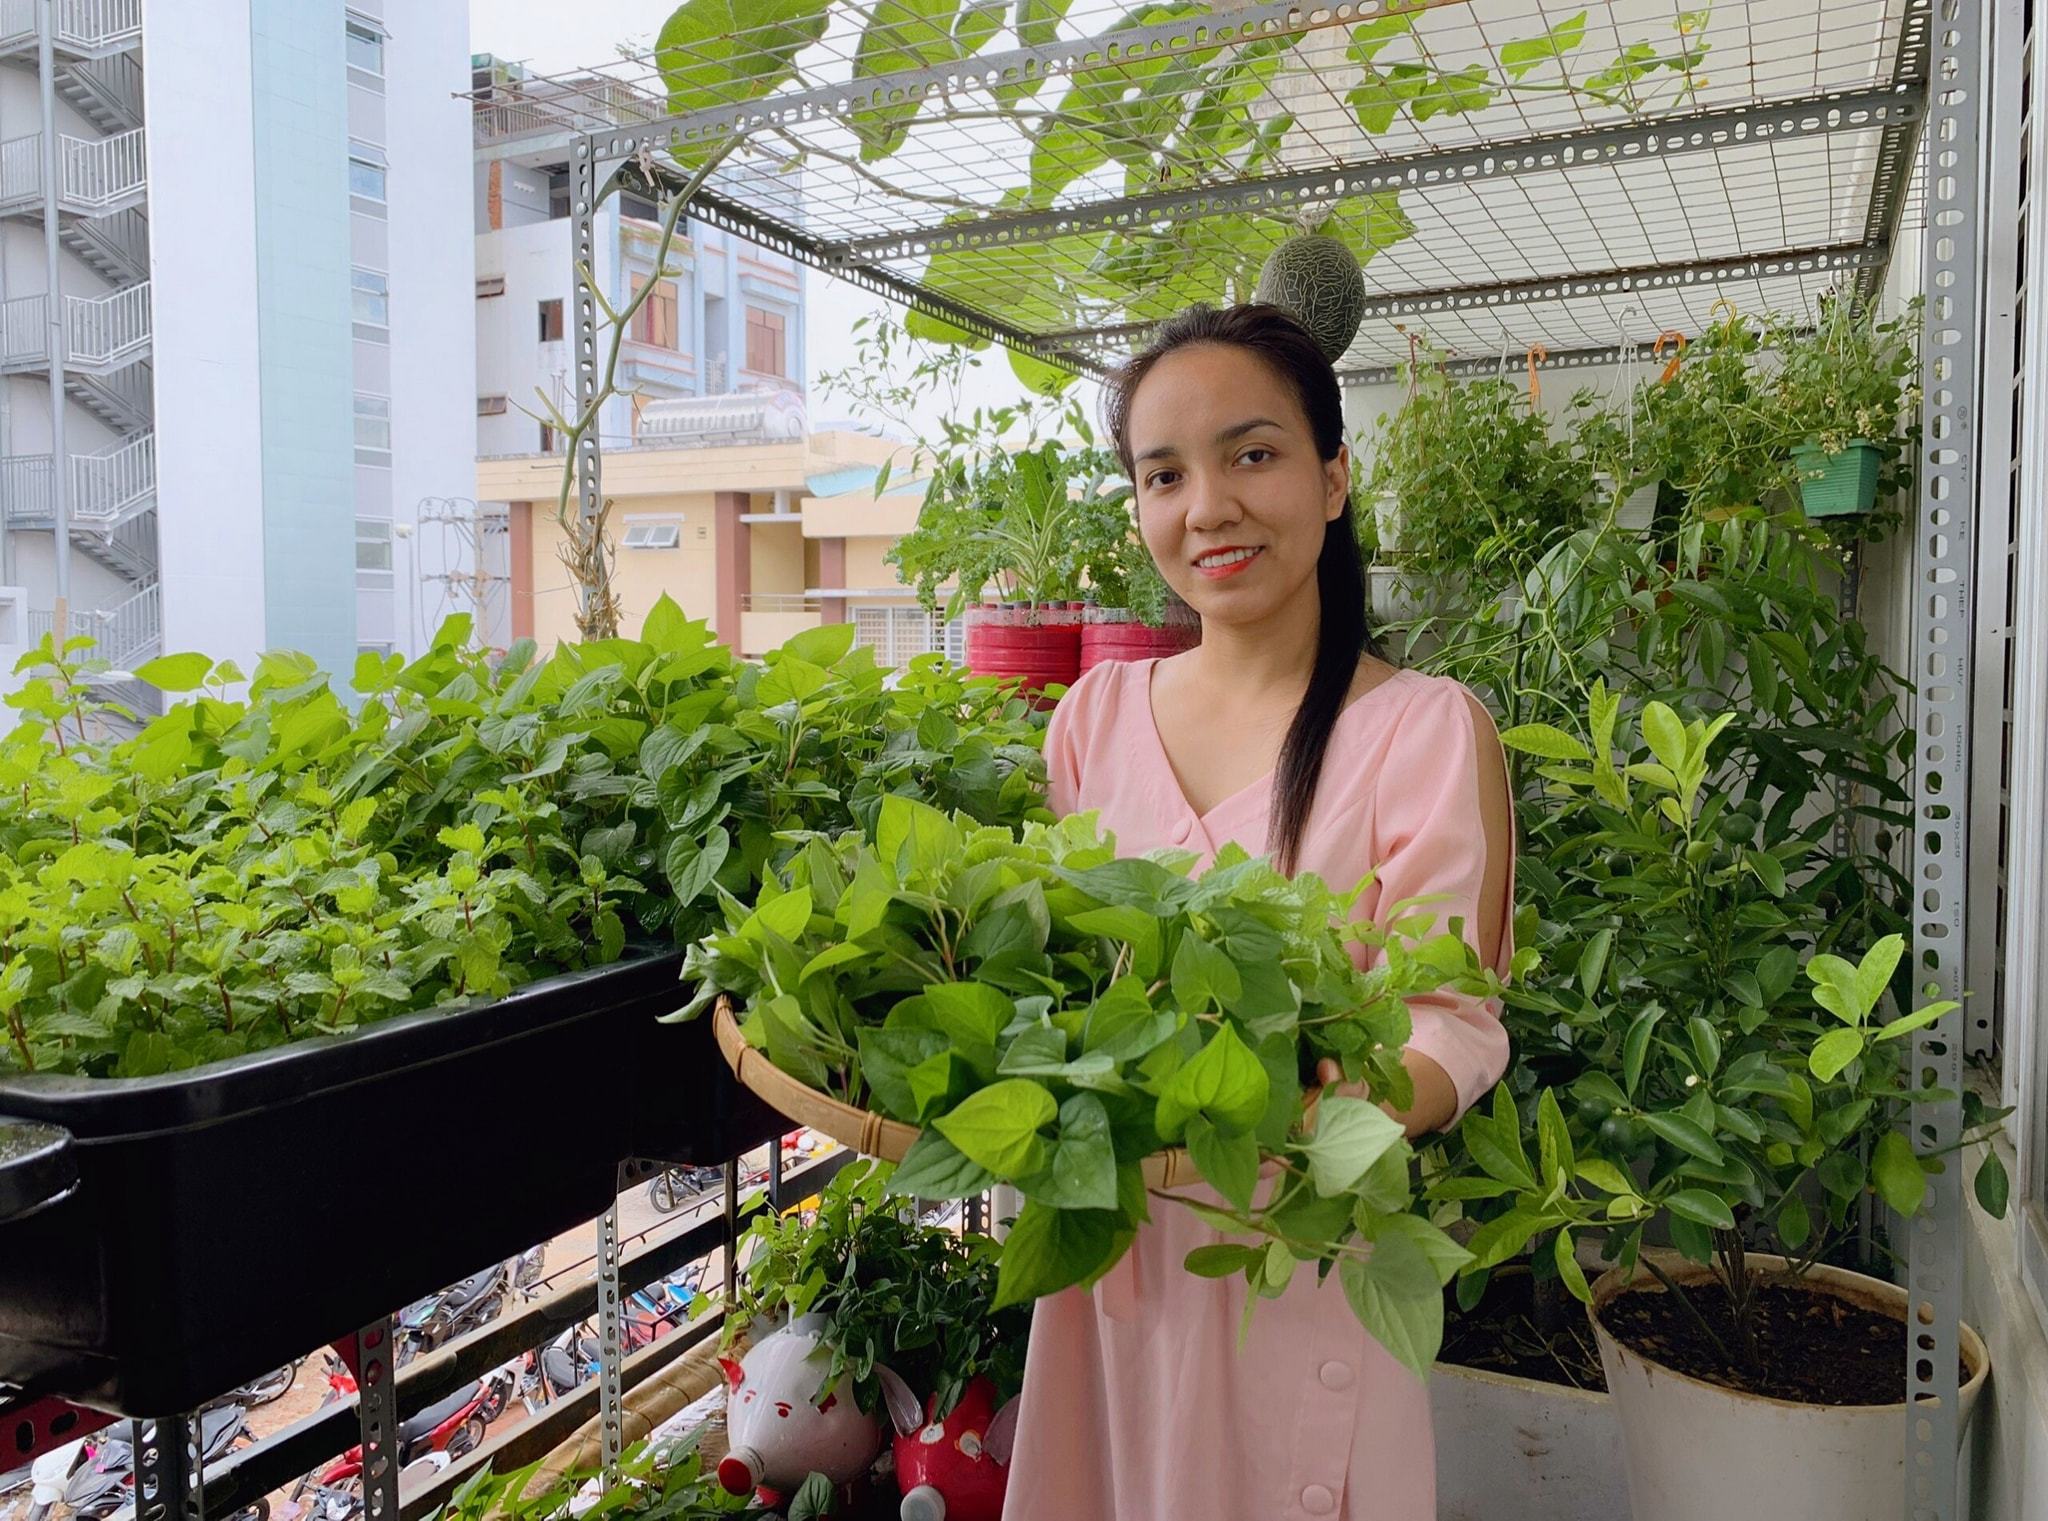 Bố đảm Sài Gòn 'biến' ban công 3m2 thành vườn rau xanh mơn mởn